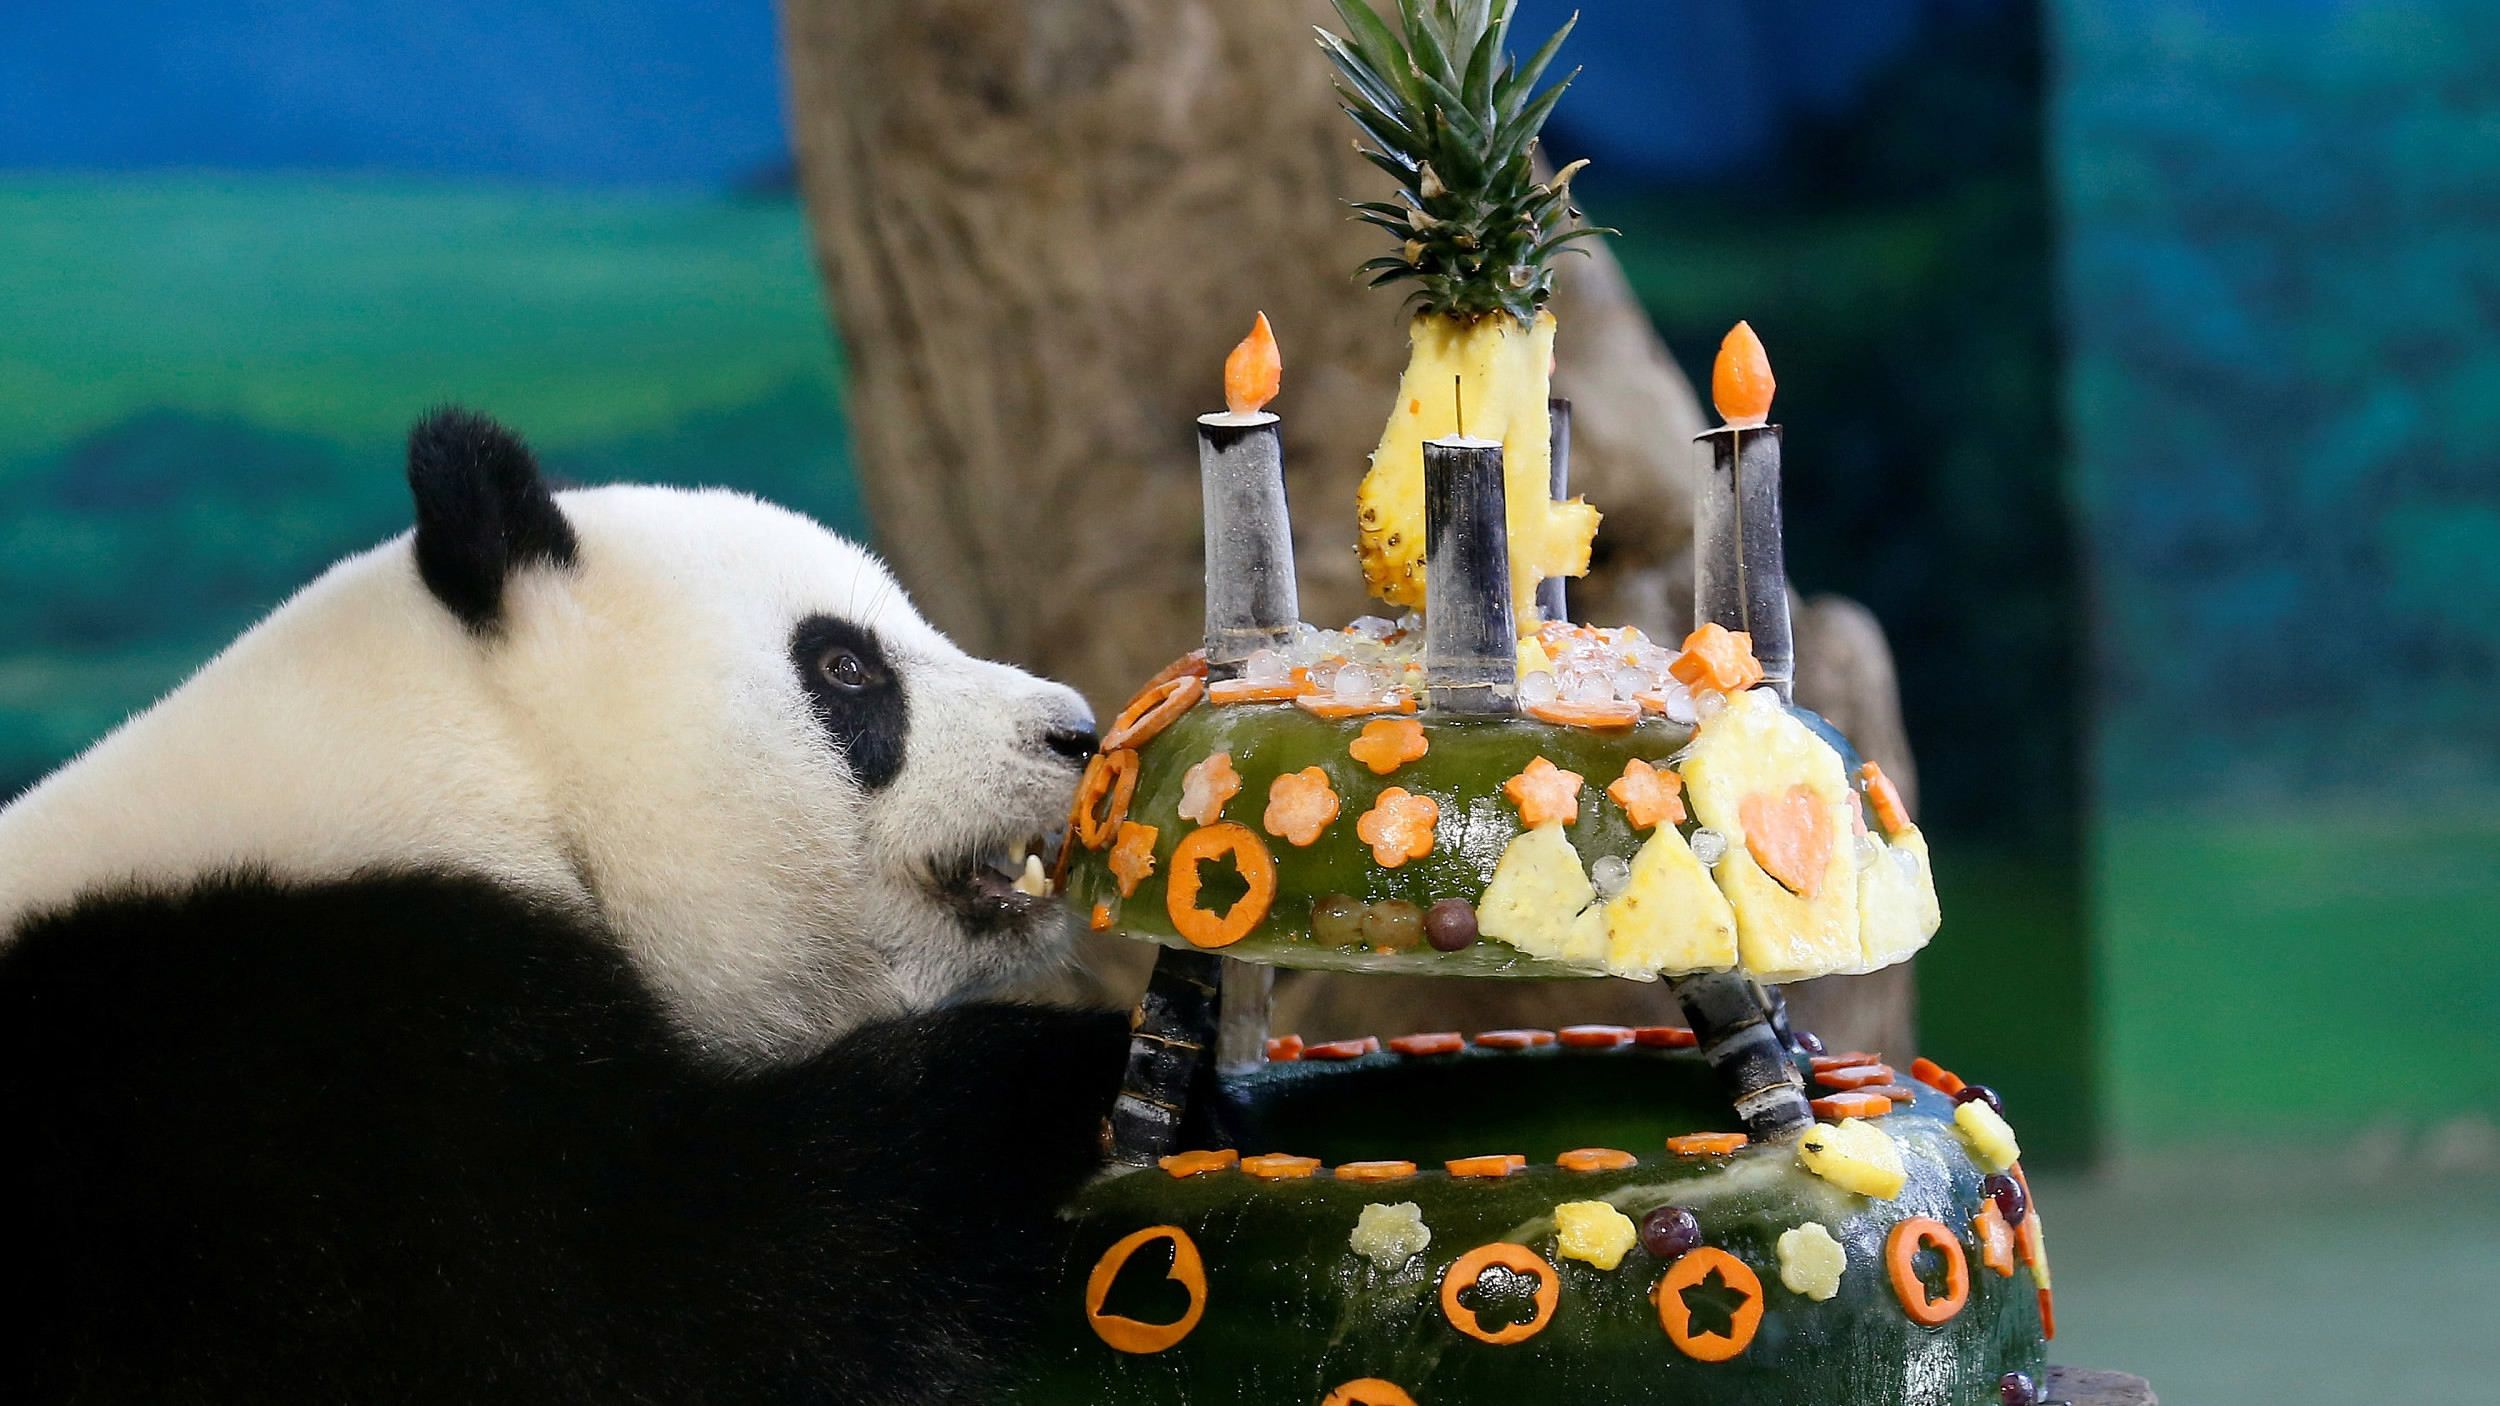 Giant panda cub Yuan Zai turns 4 in Taipei zoo - CGTN